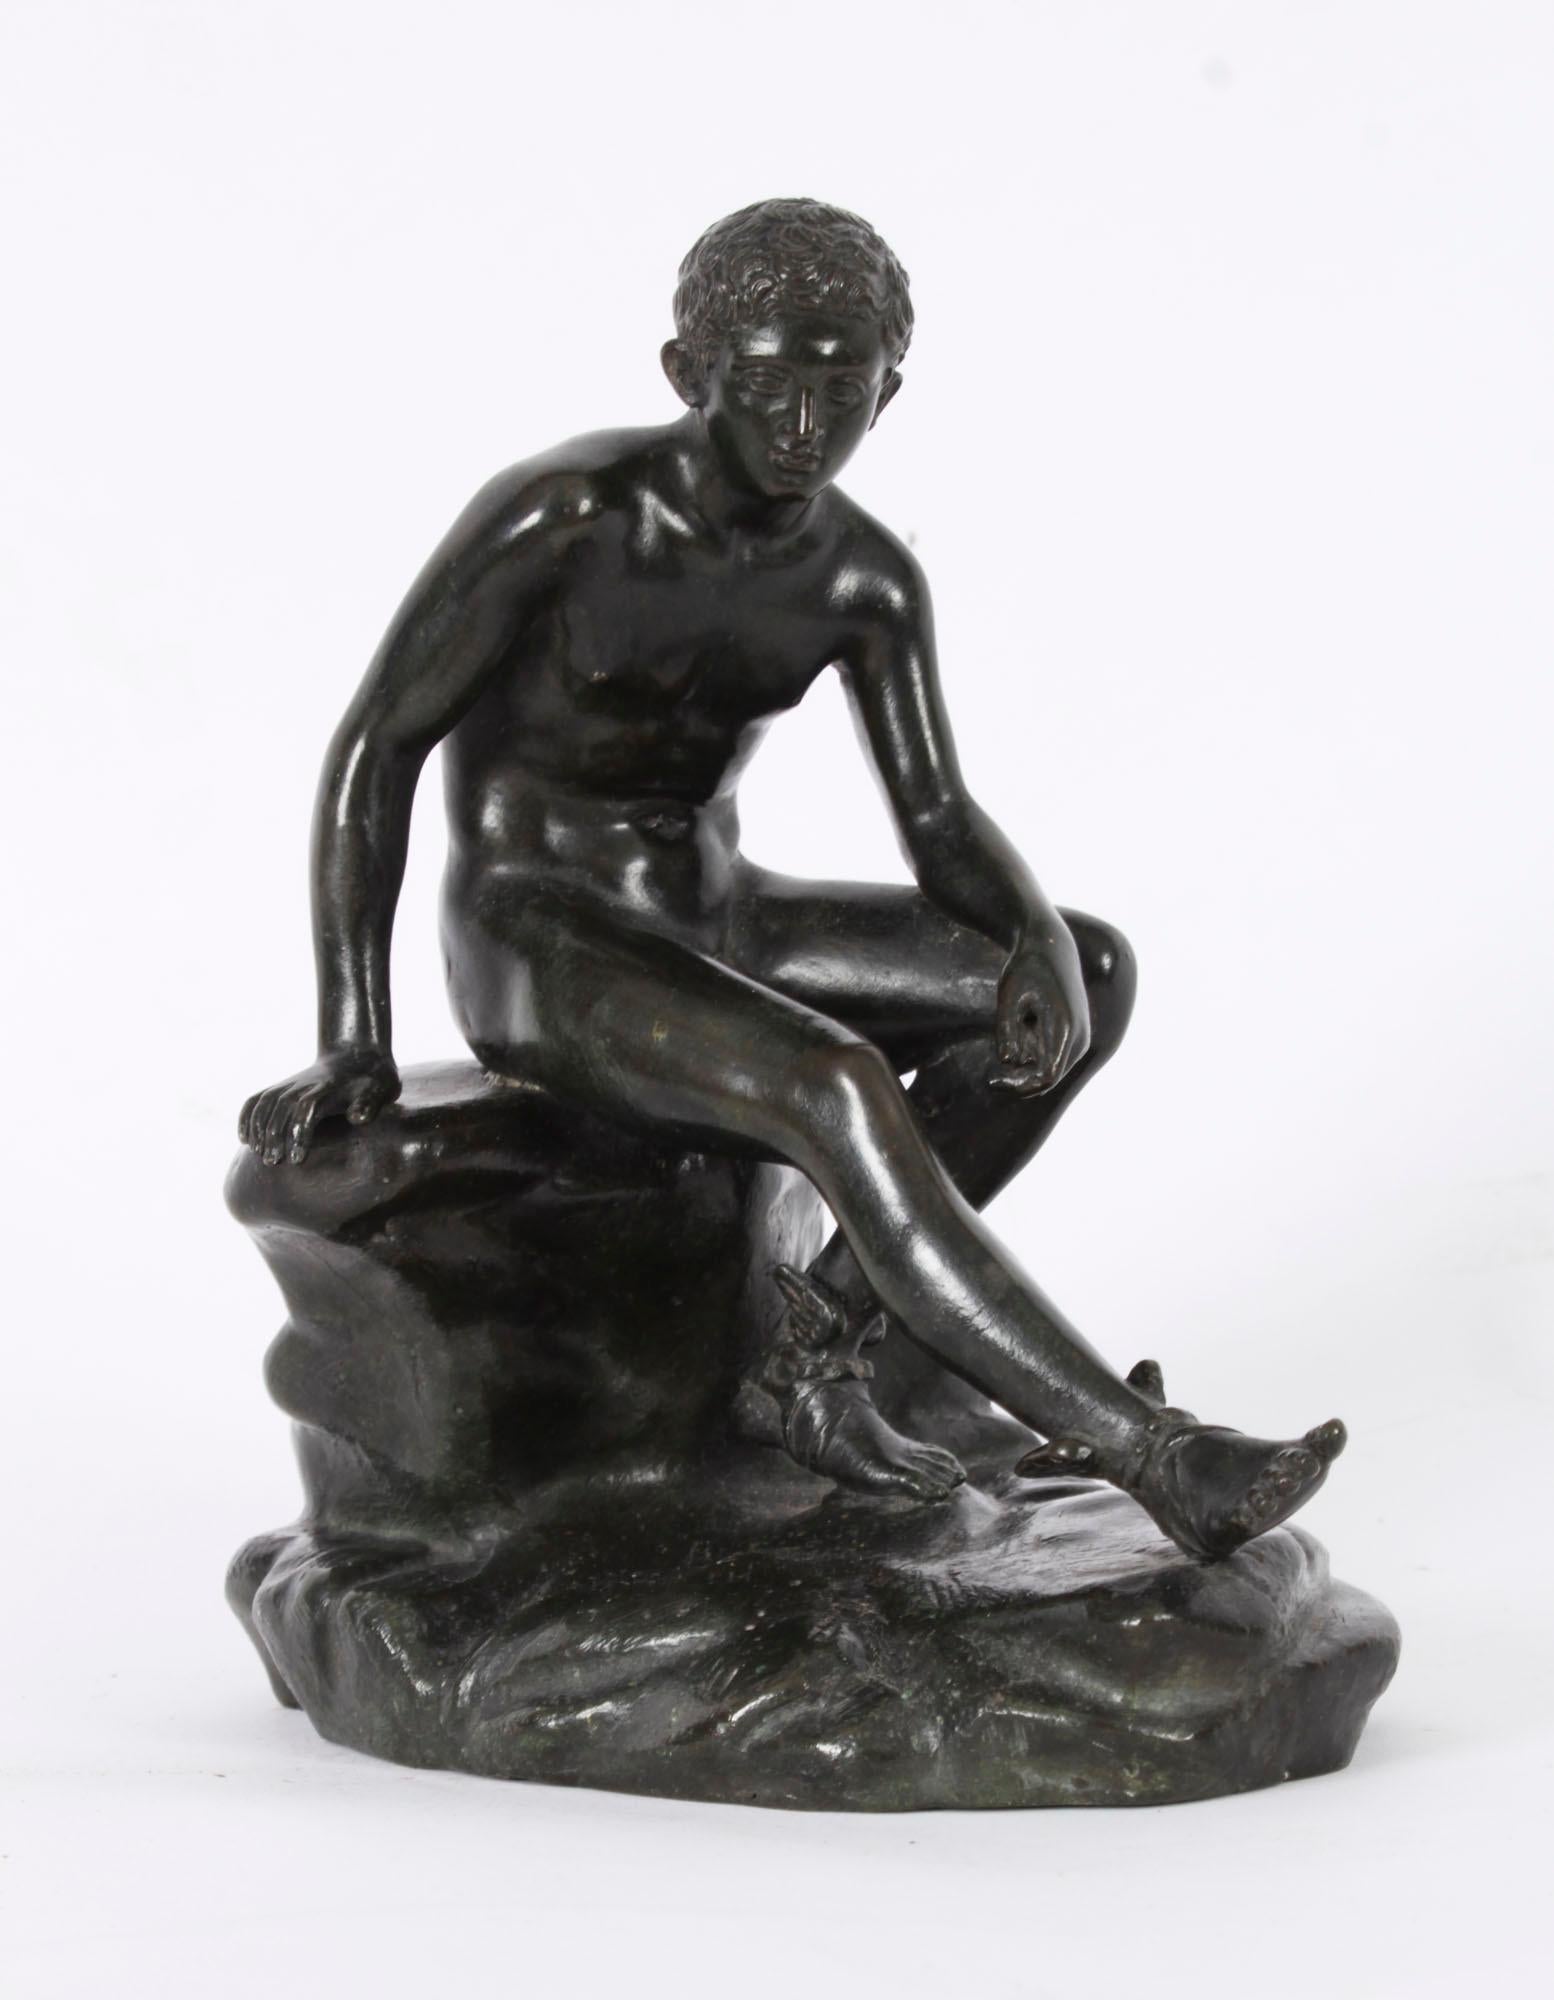 Il s'agit d'une sculpture ancienne en bronze du Grand Tour d'Italie représentant Hermès, datant d'environ 1880.

Hermès est moulé d'après l'original conservé au Museo Nazionale de Naples et est représenté nu, assis sur une base rocheuse naturaliste.